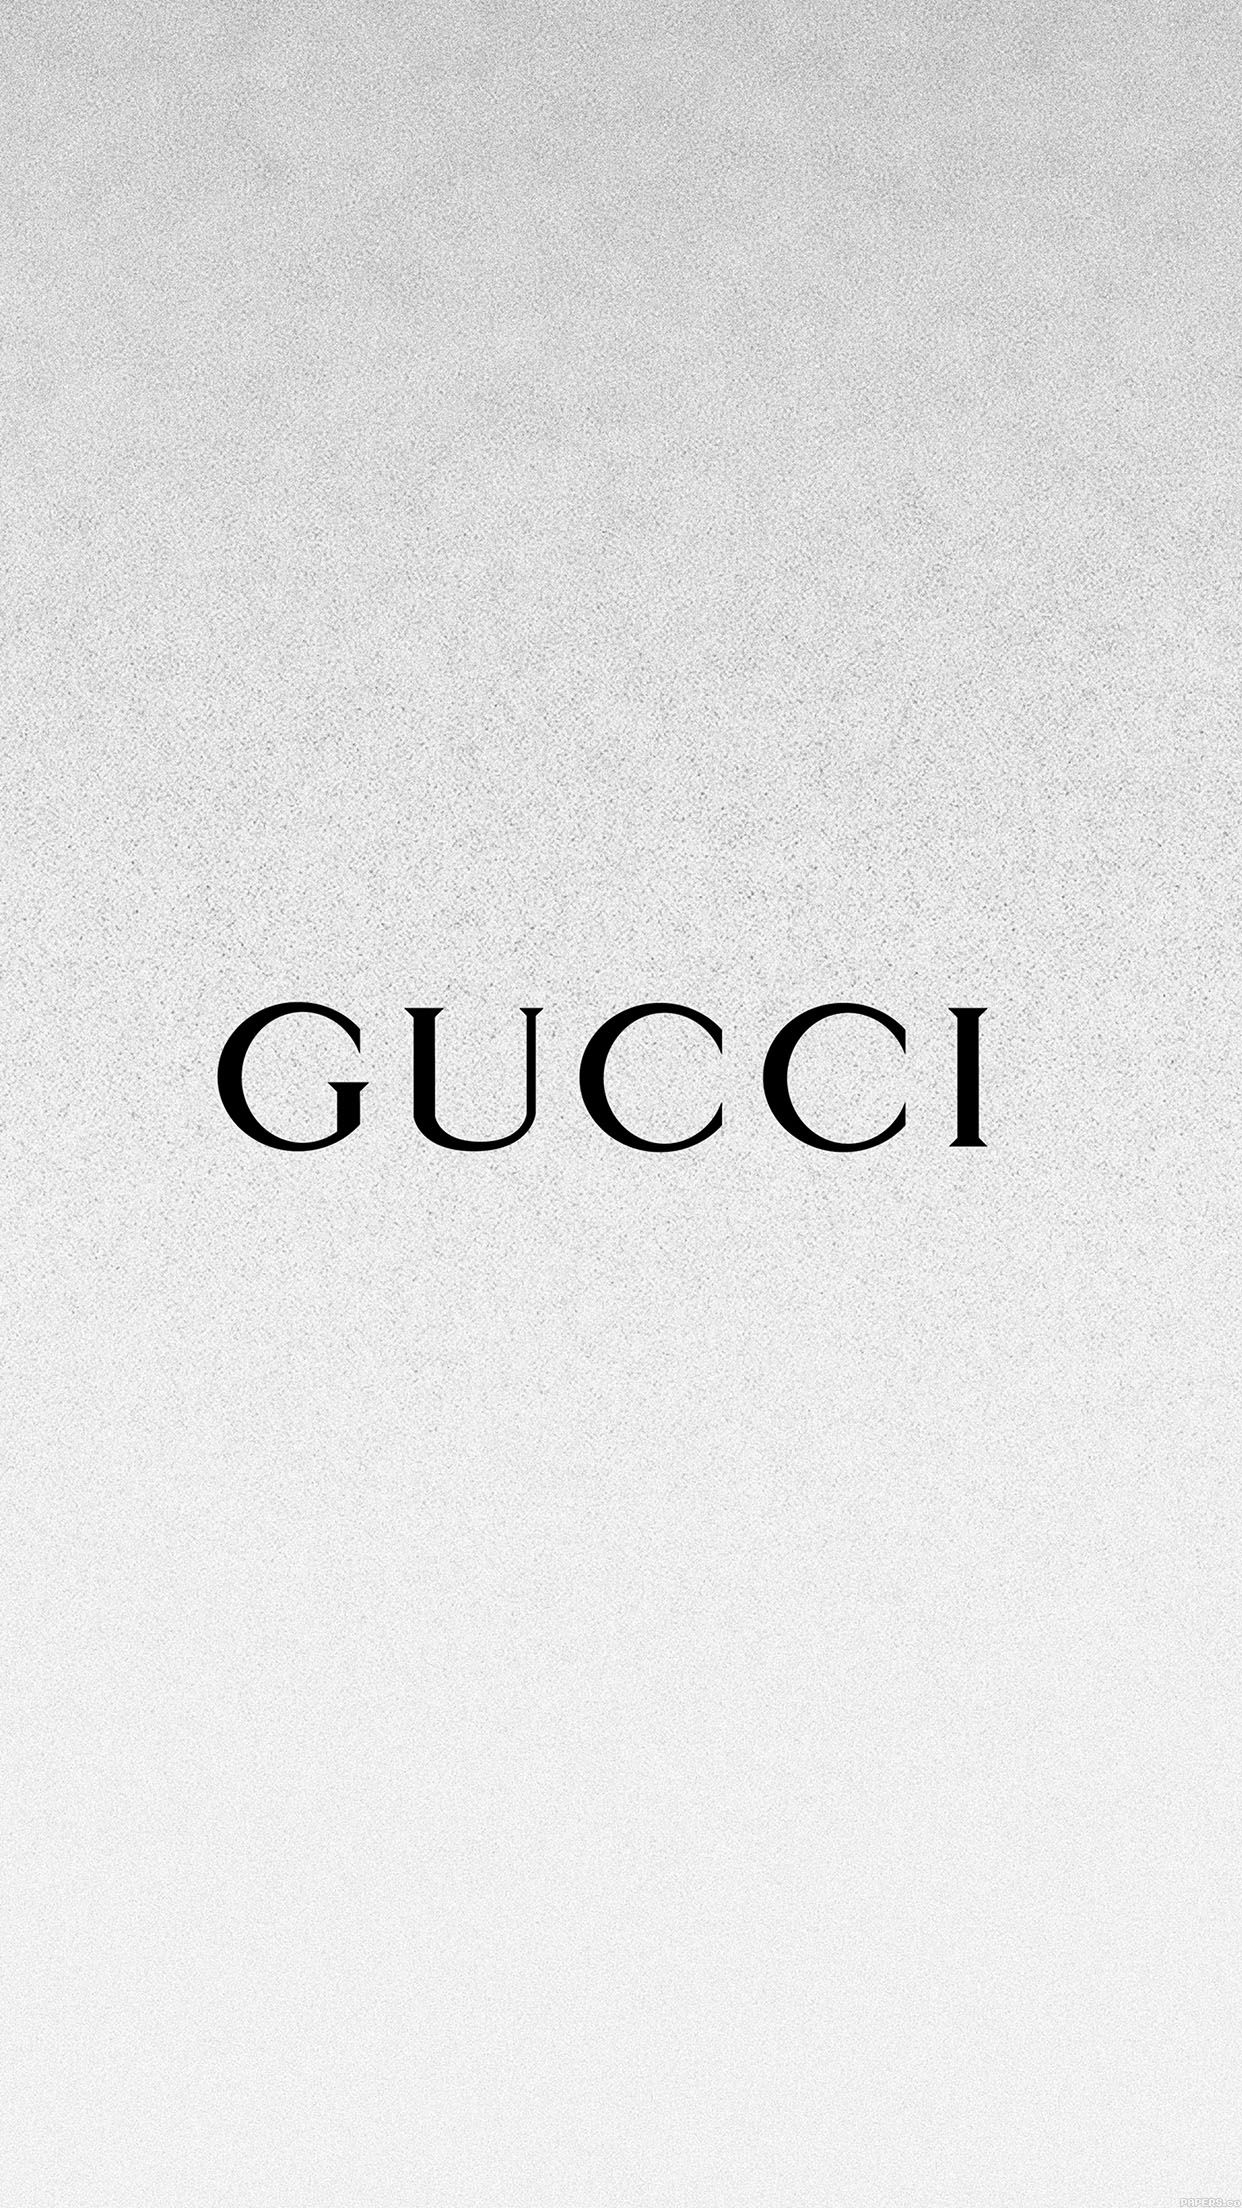 White Gucci Wallpaper Free White Gucci Background